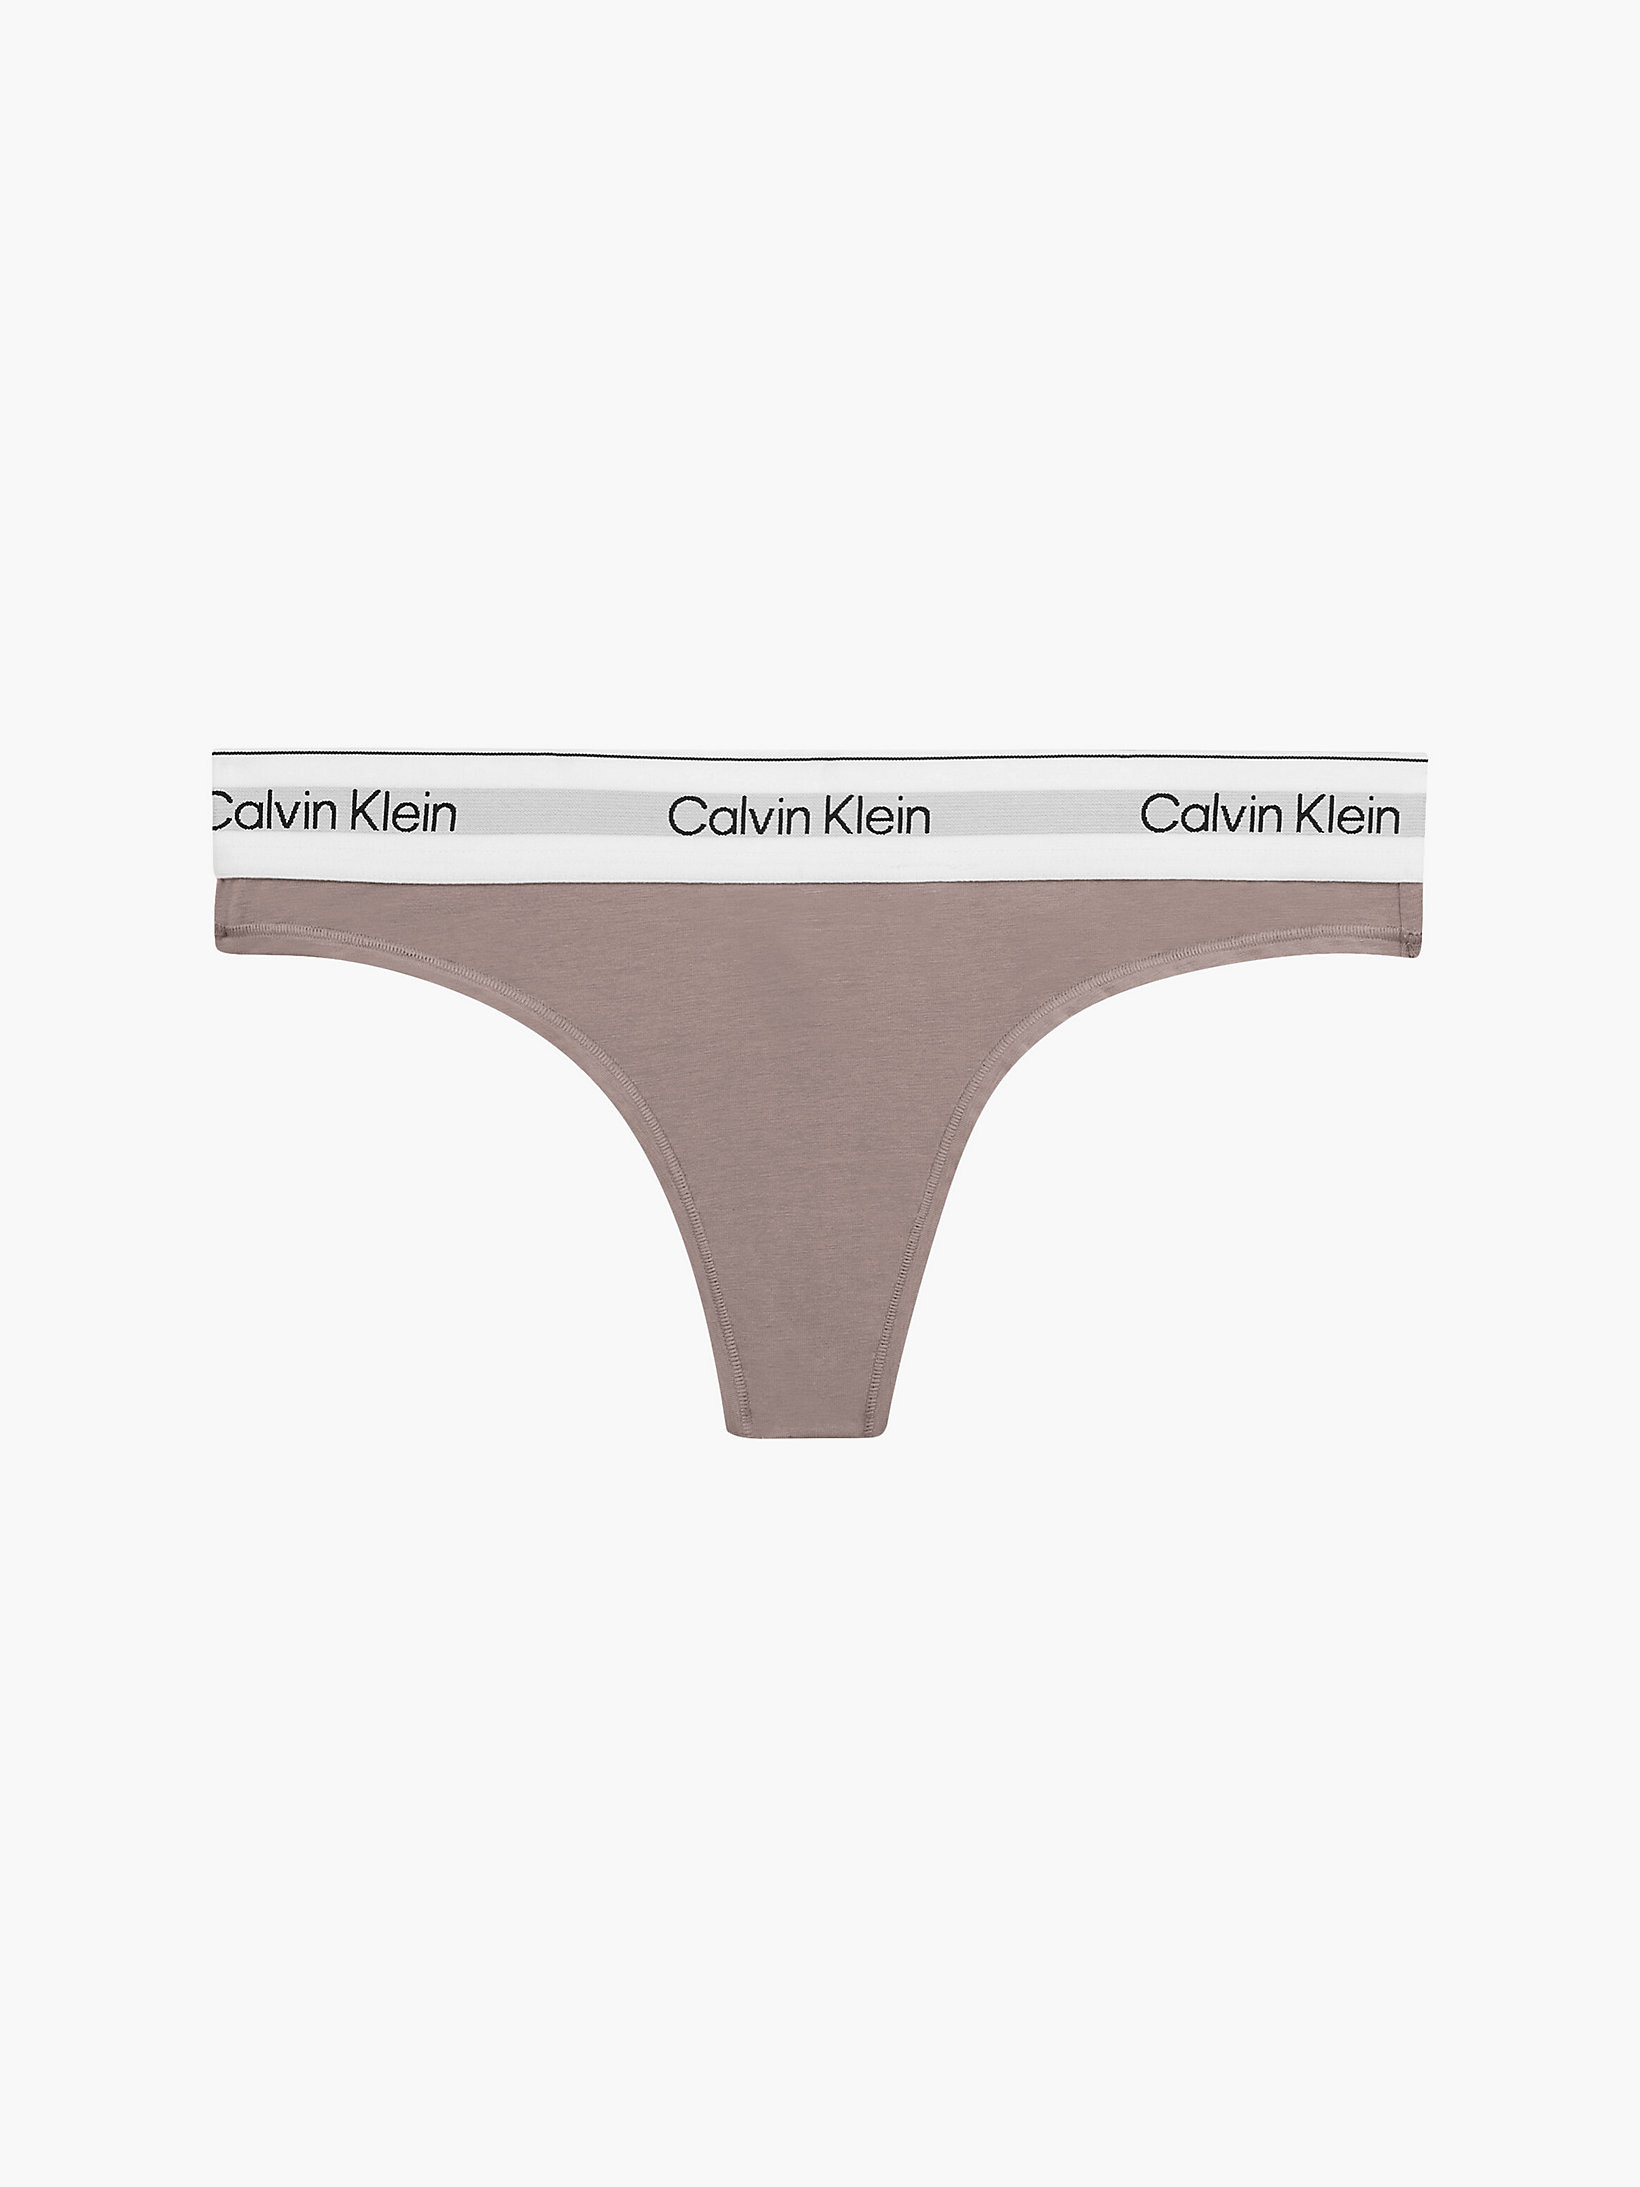 Rich Taupe > String – Modern Cotton > undefined Damen - Calvin Klein